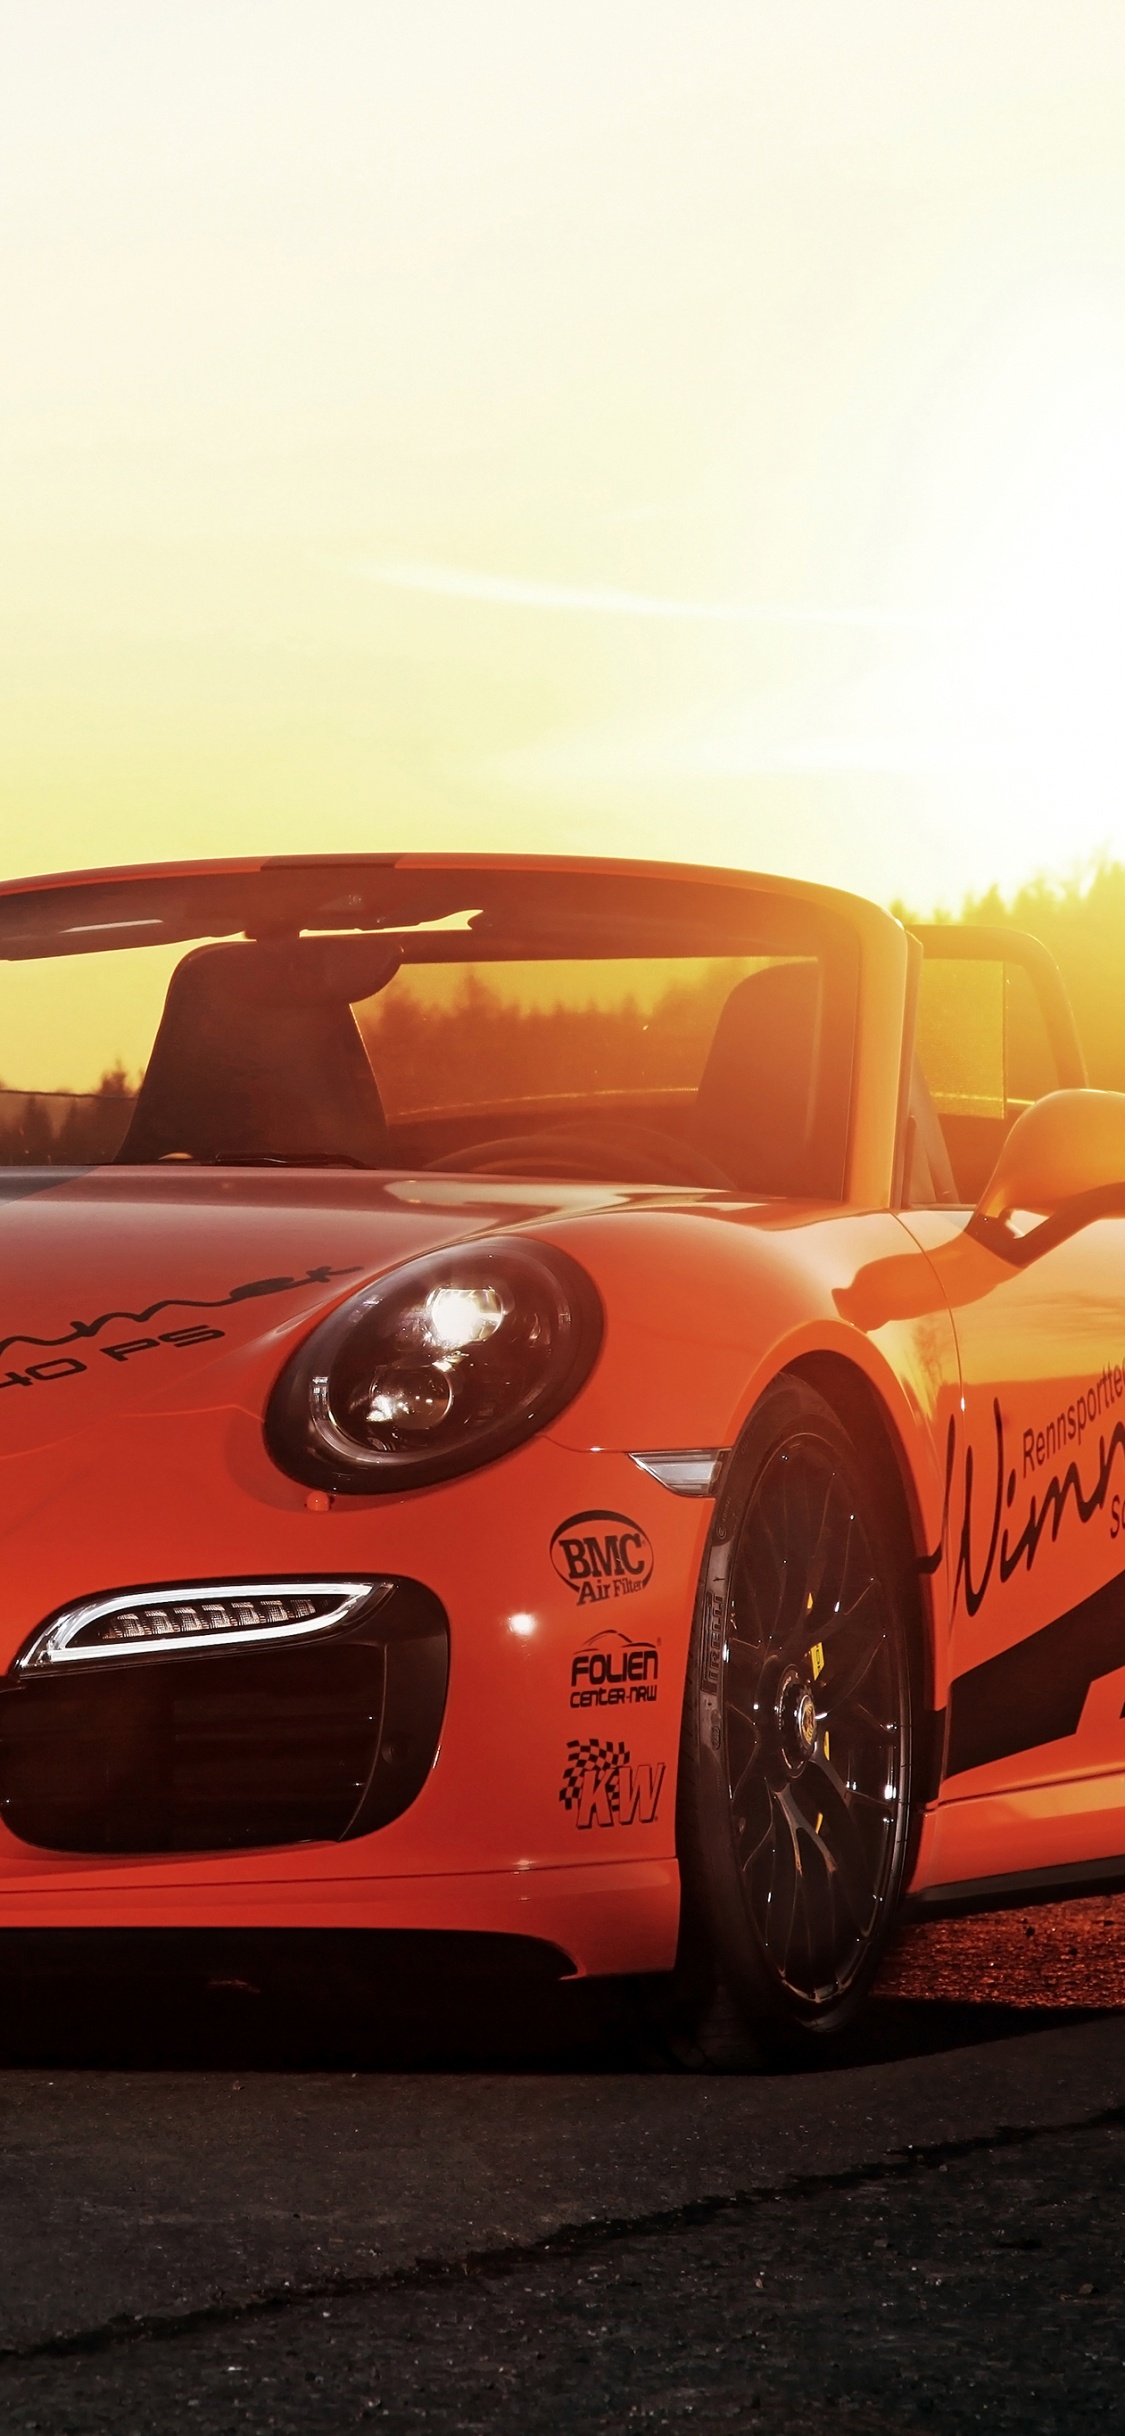 Porsche 911 Rouge Sur Route Pendant la Journée. Wallpaper in 1125x2436 Resolution